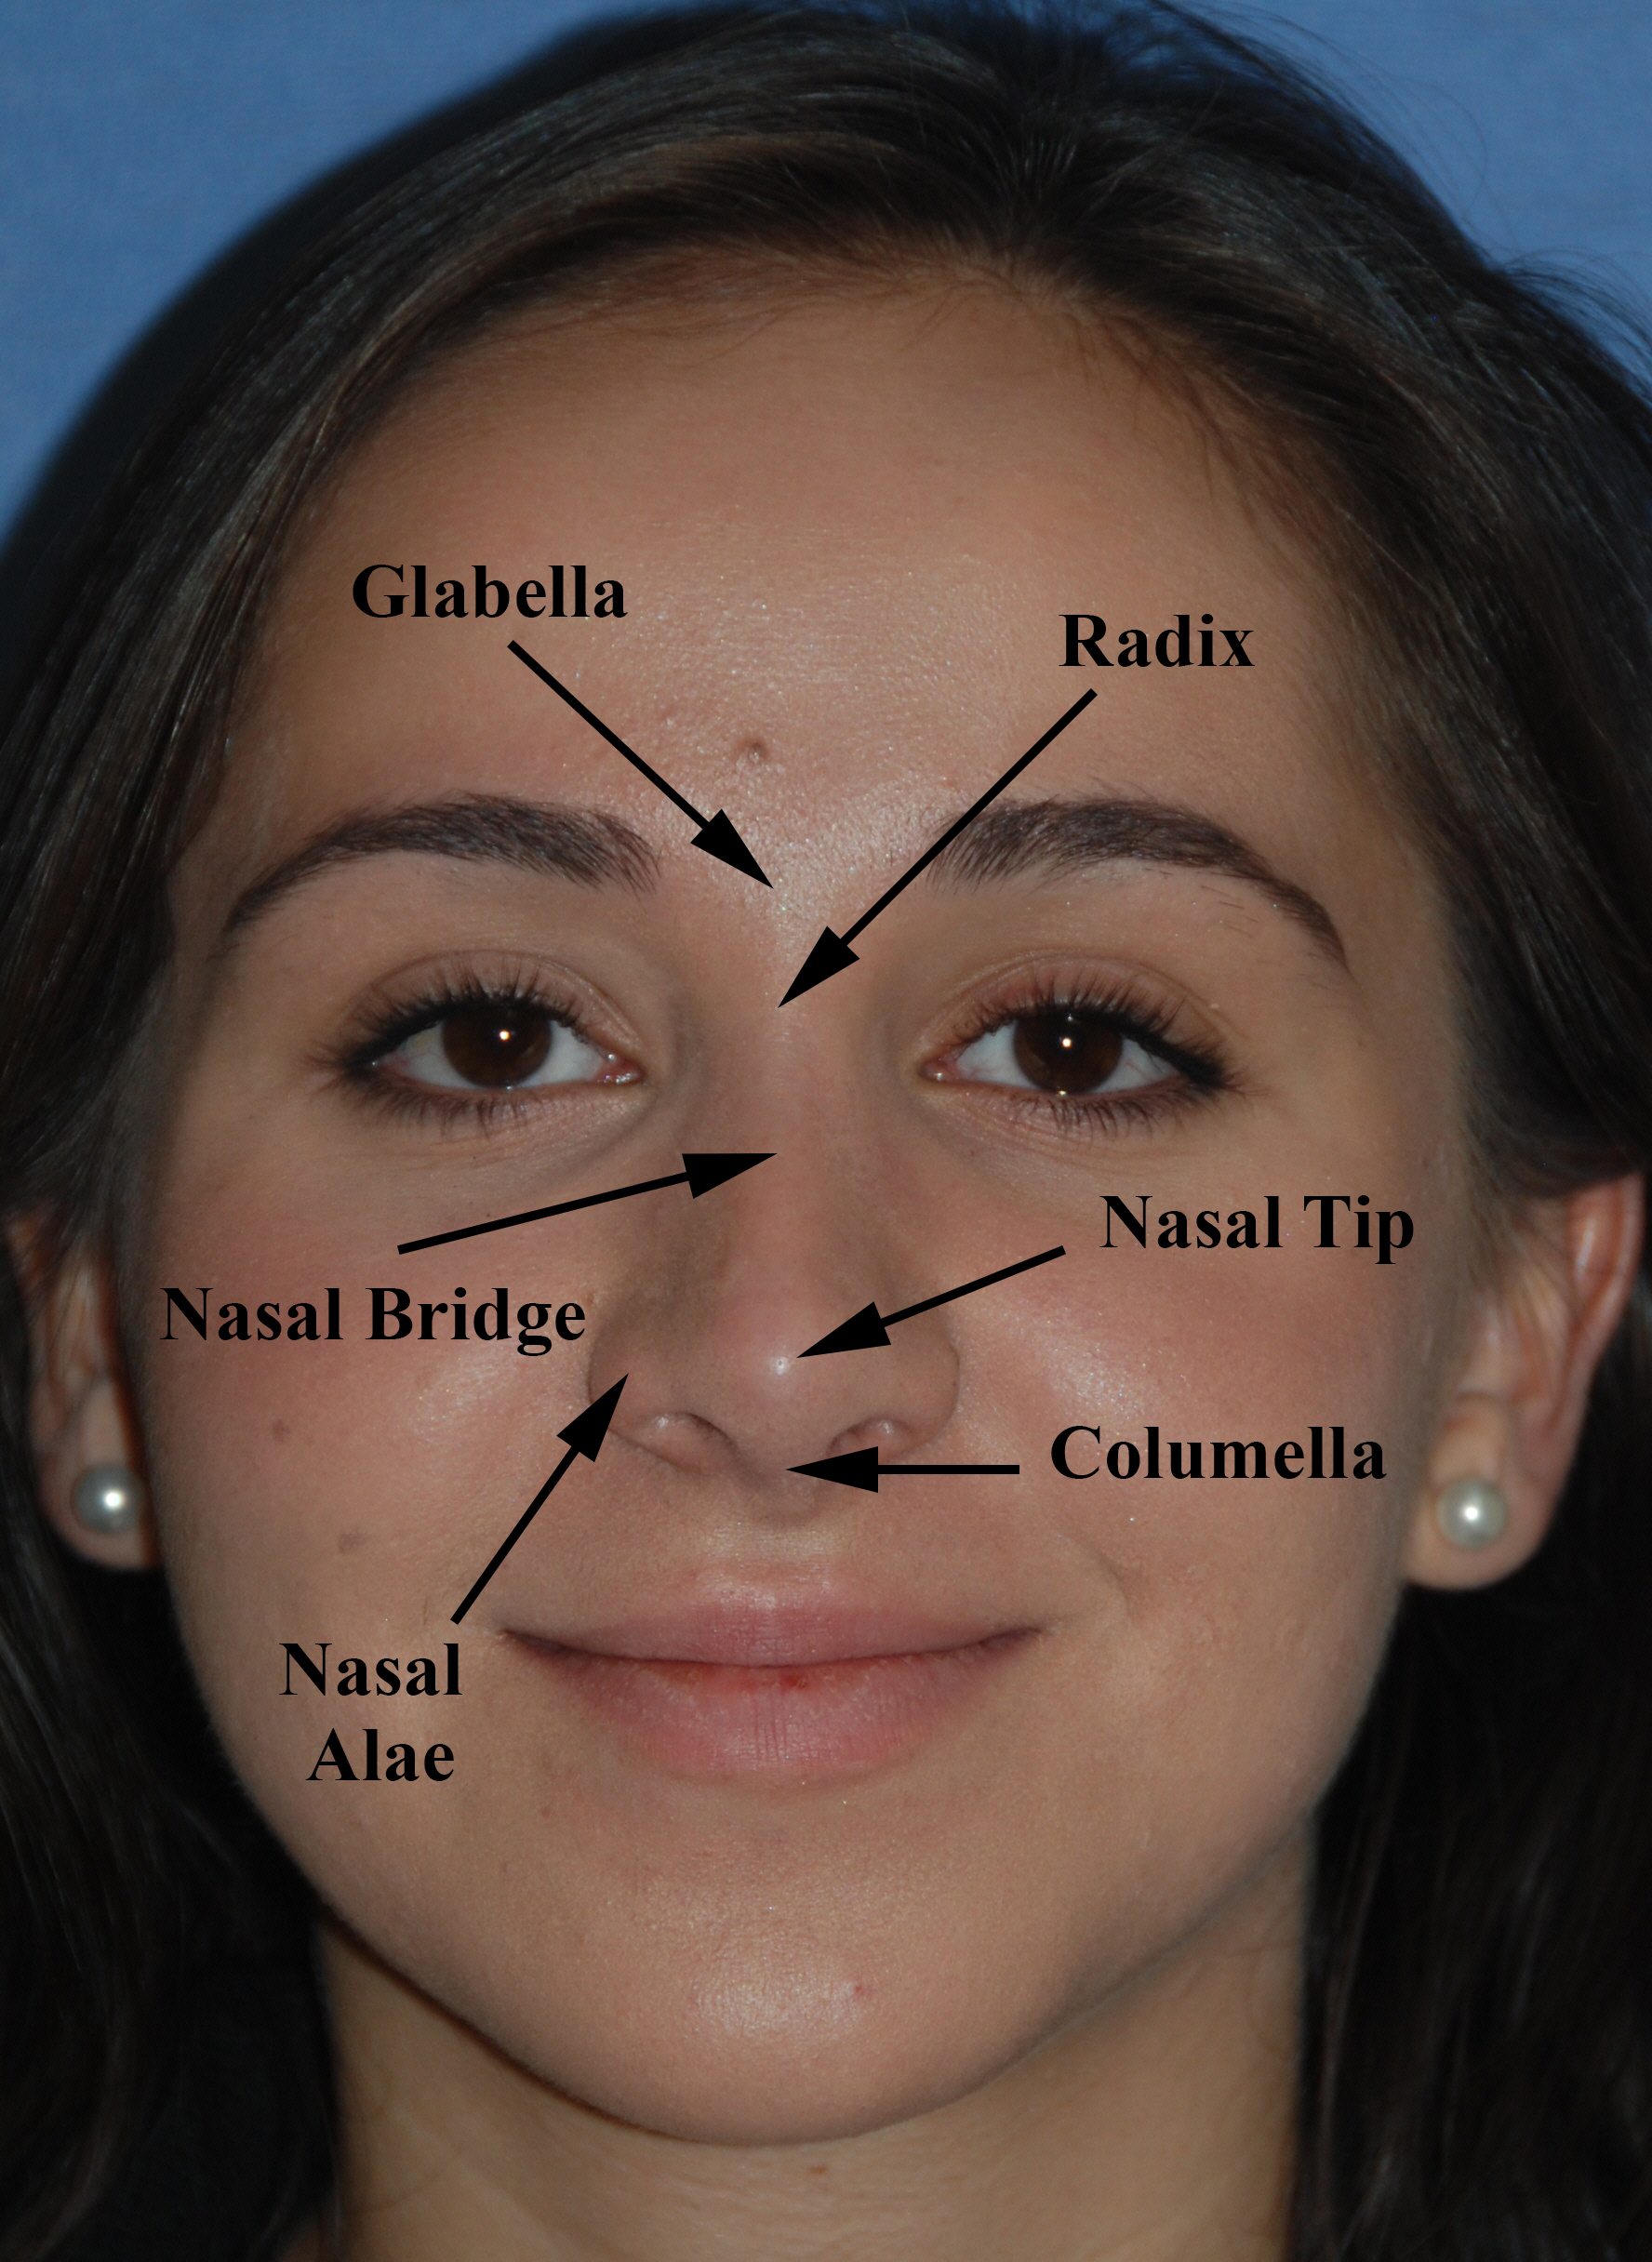 Rhinoplasty / Nose Surgery / Nose job / Nose Reshaping / Nasal